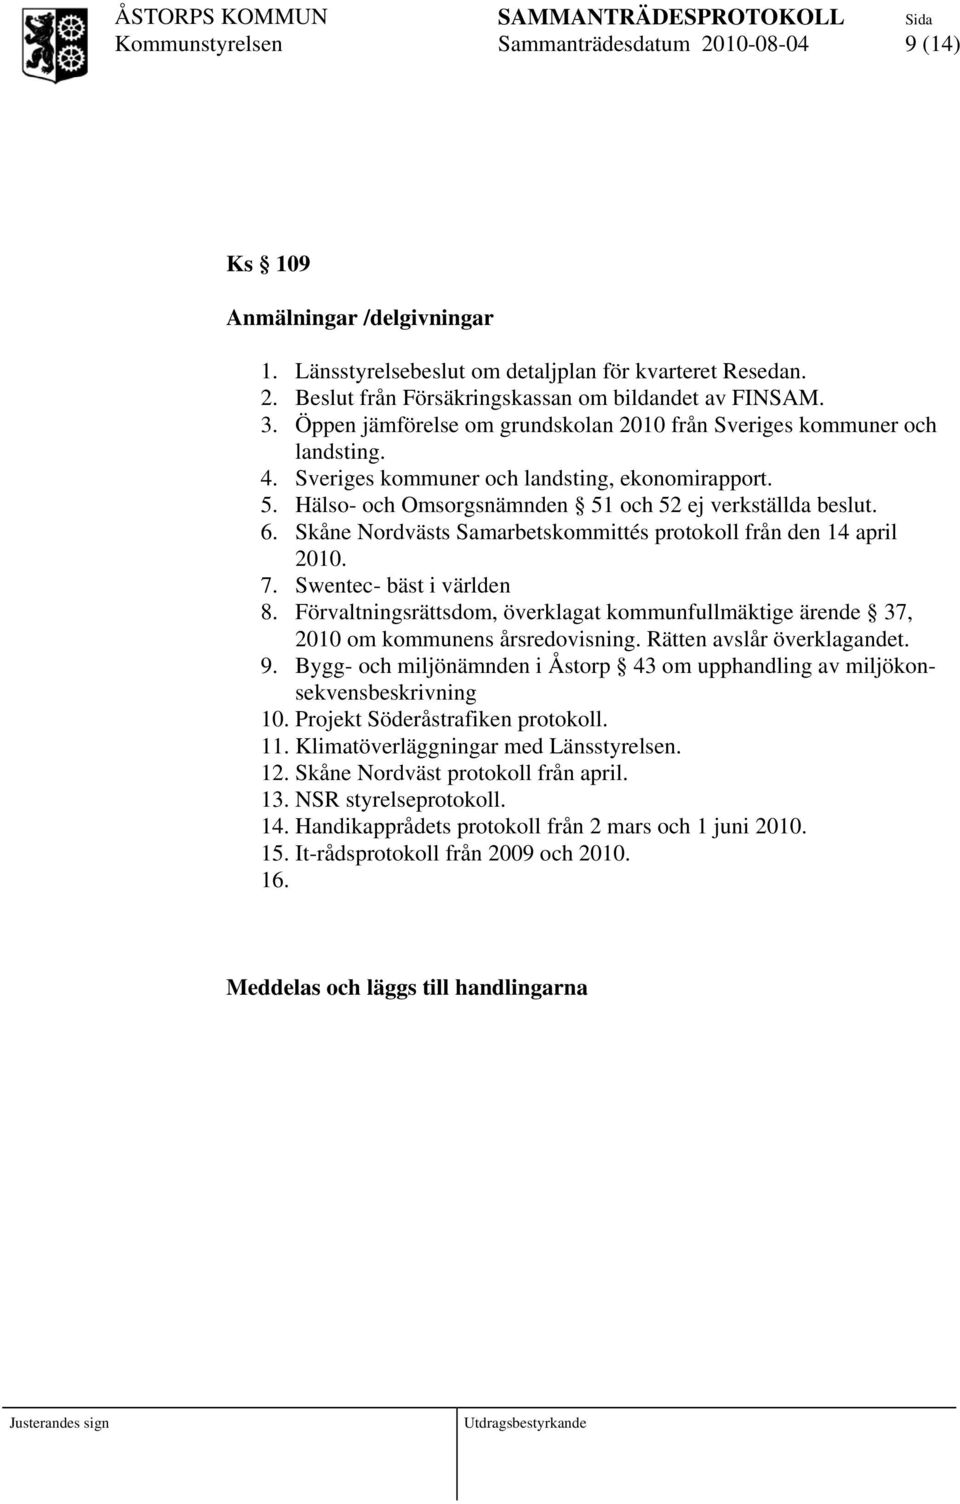 Skåne Nordvästs Samarbetskommittés protokoll från den 14 april 2010. 7. Swentec- bäst i världen 8. Förvaltningsrättsdom, överklagat kommunfullmäktige ärende 37, 2010 om kommunens årsredovisning.